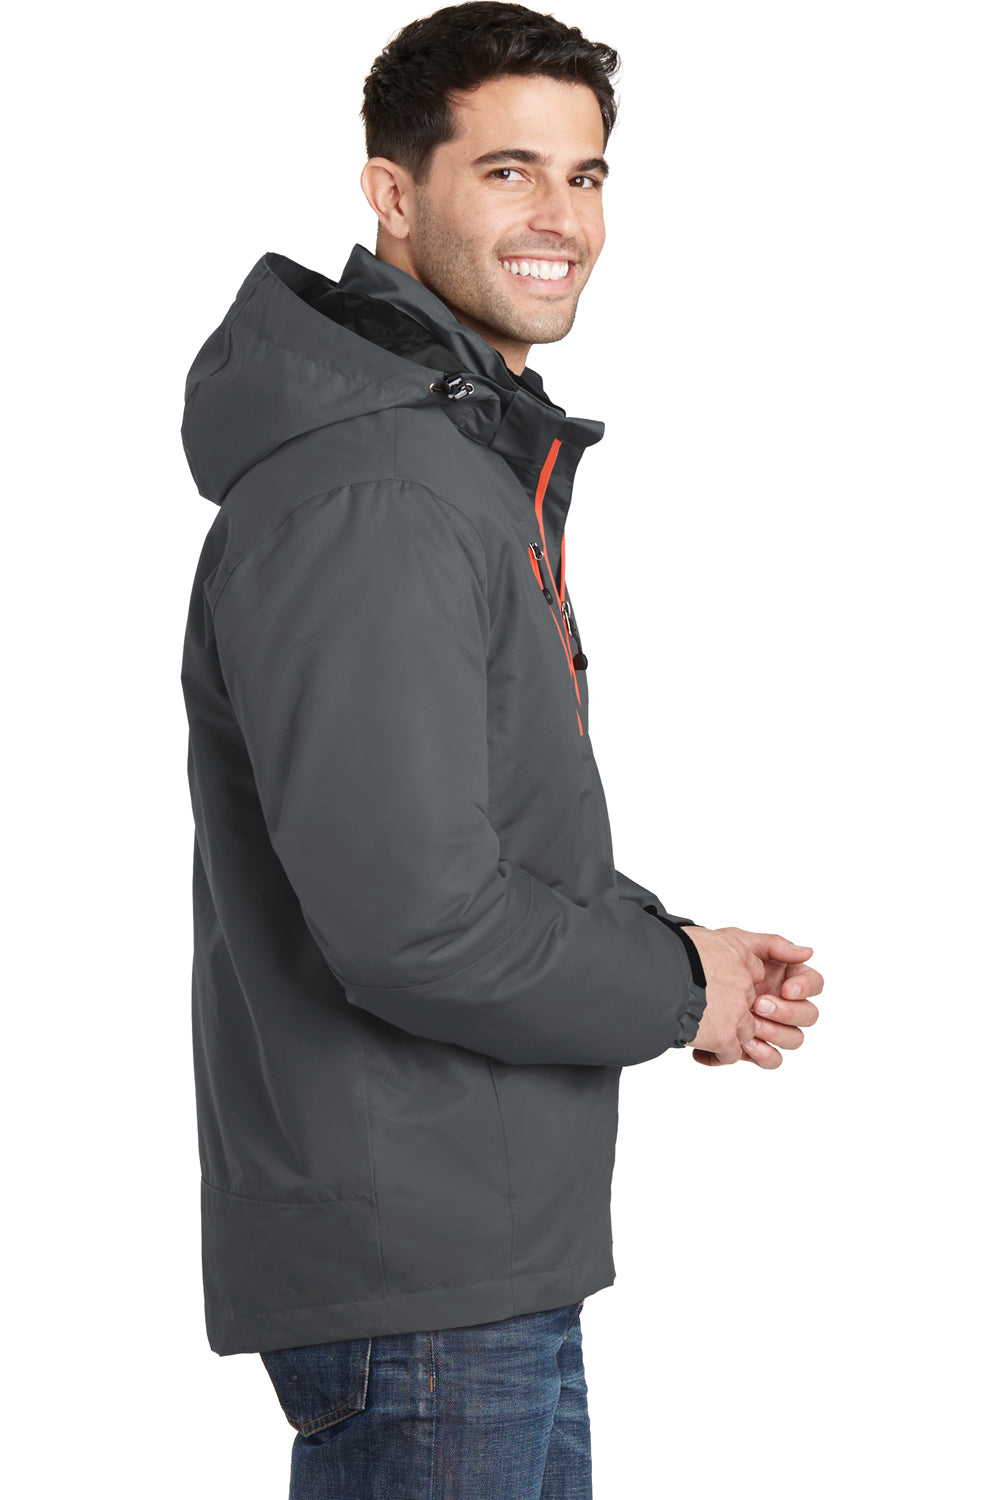 Port Authority J332 Mens Vortex 3-in-1 Waterproof Full Zip Hooded Jacket Magnet Grey/Orange Side